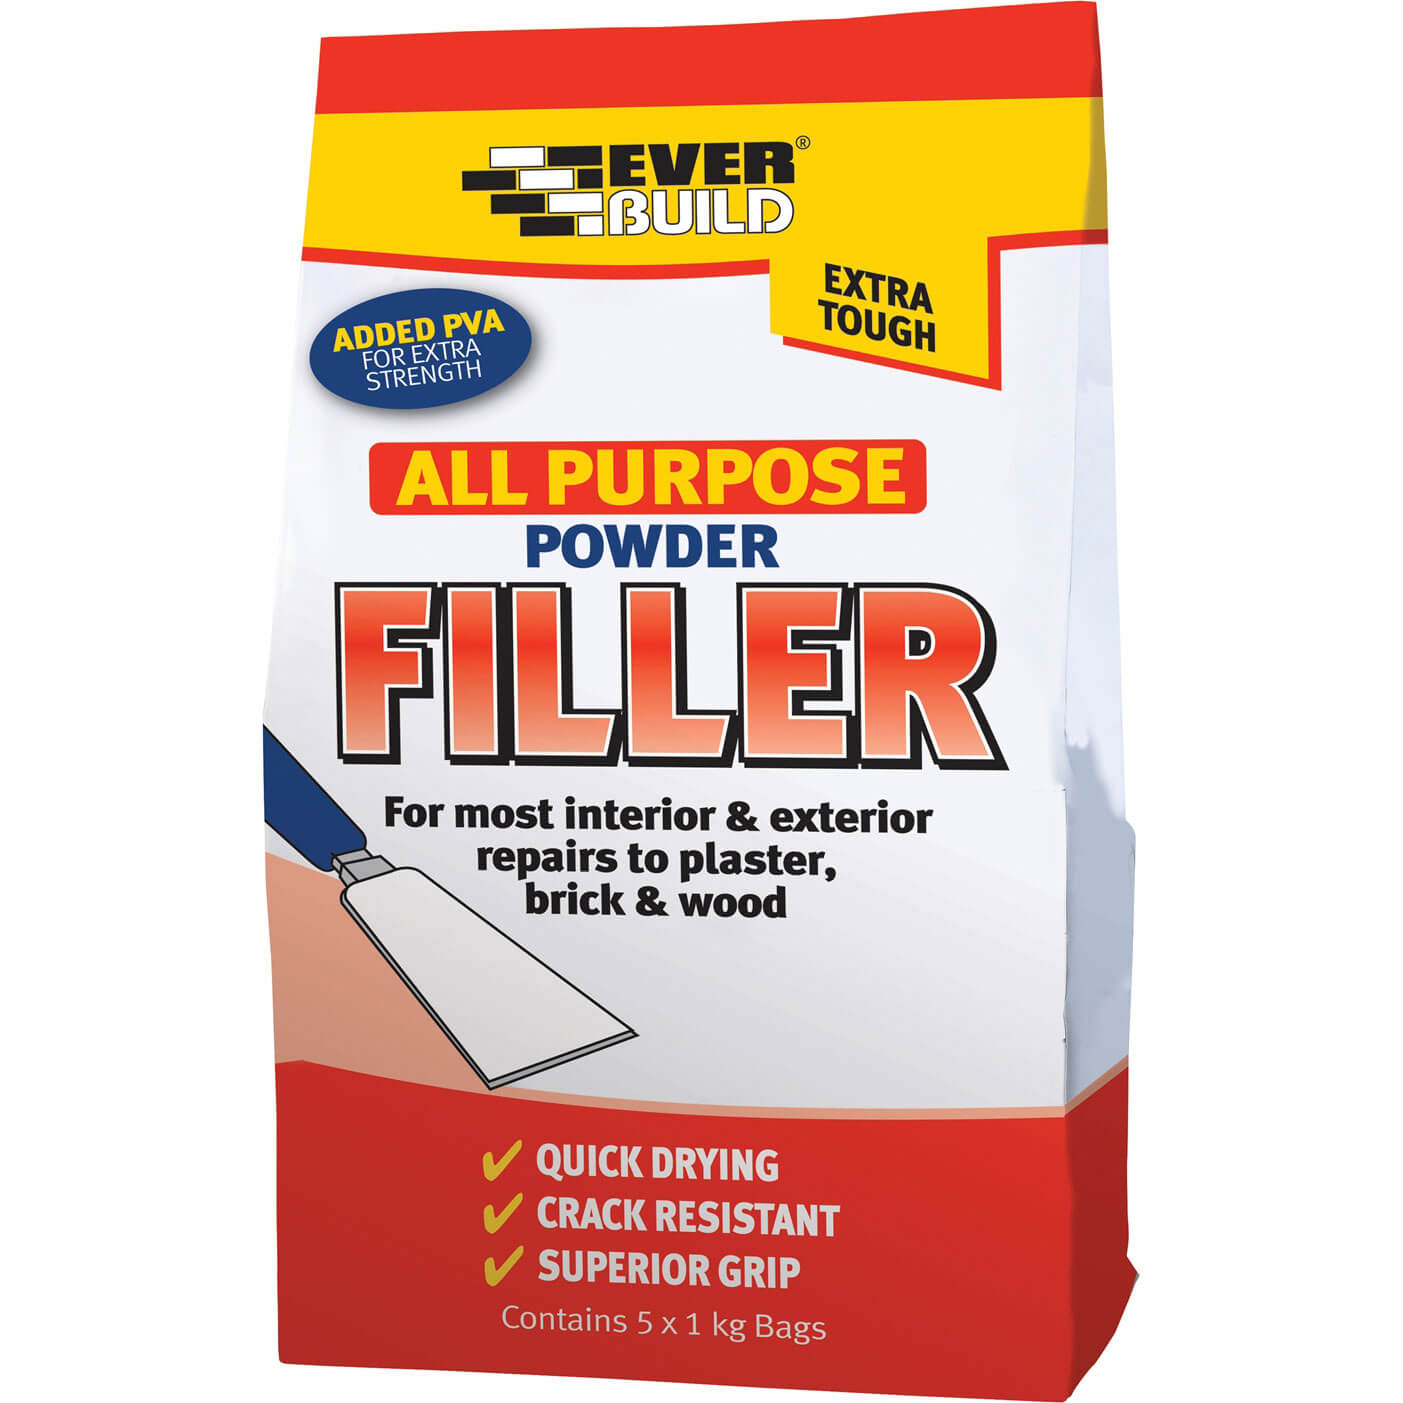 Image of Everbuild All Purpose Powder Filler 5kg